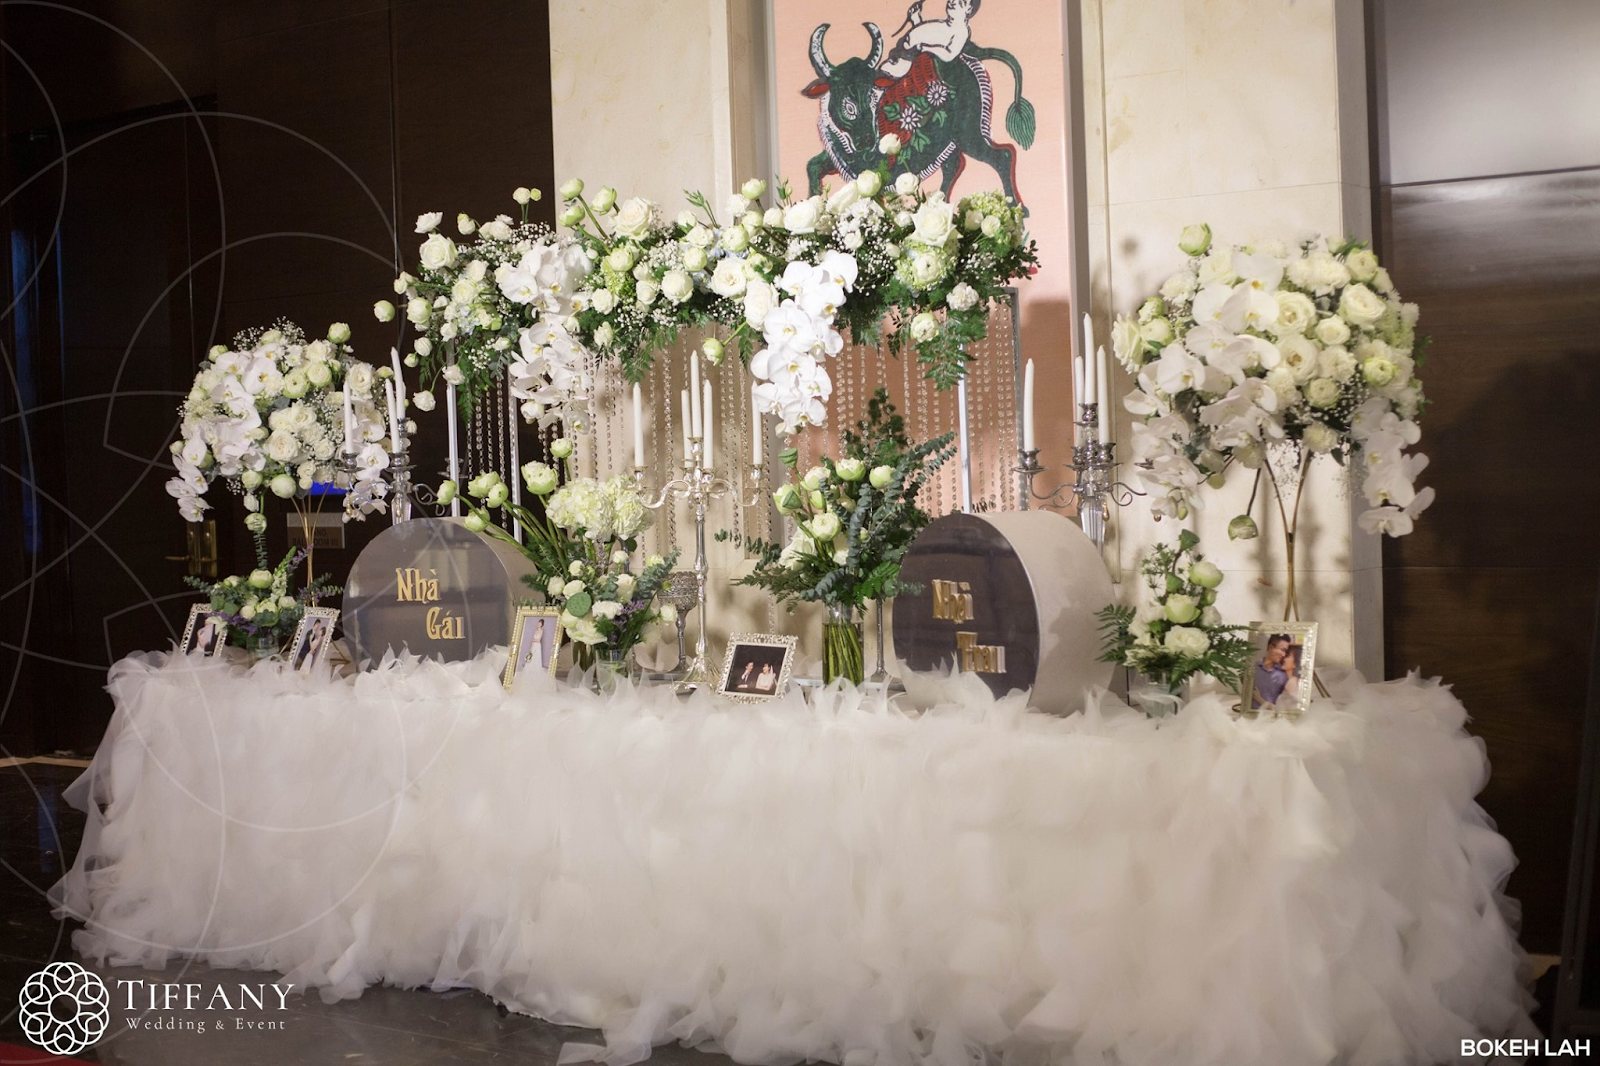 Hình ảnh thực tế trang trí không gian bên trong tiệc cưới với sen trắng do Tiffany thực hiện